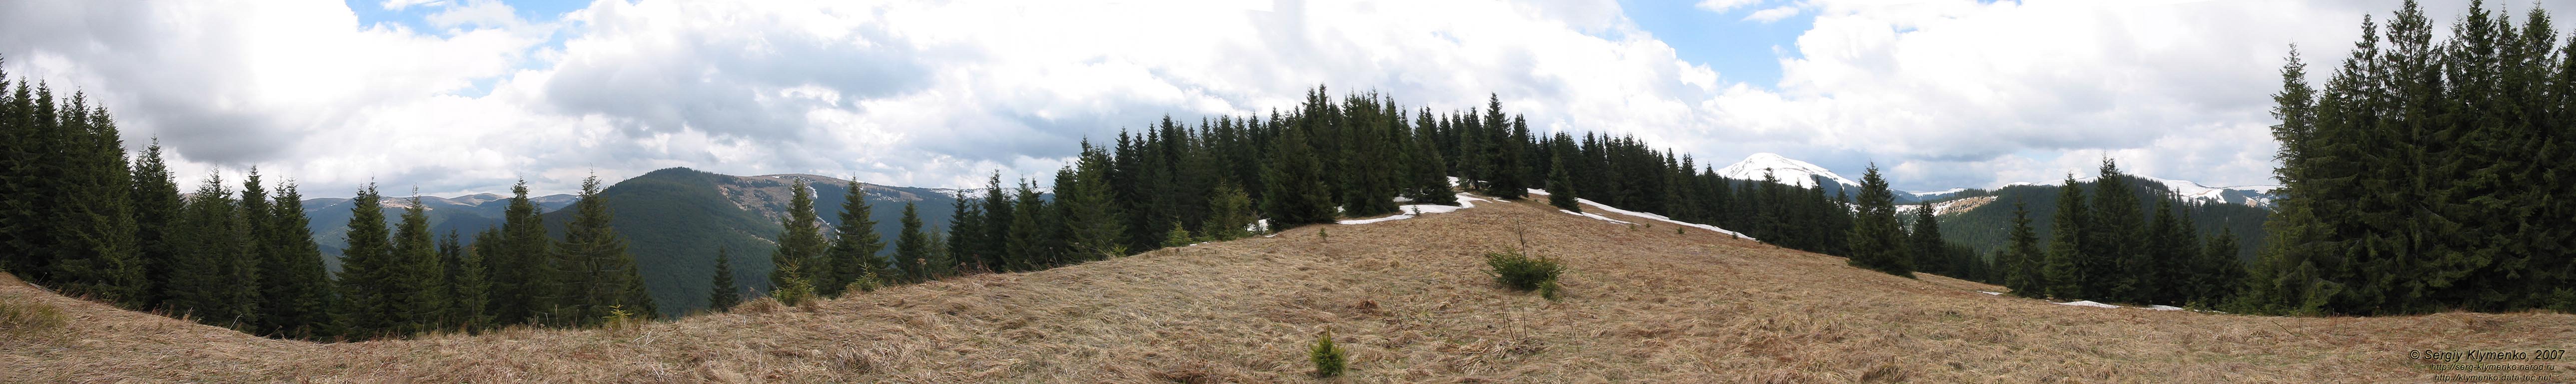 Фото Карпат, панорама с хребта между потоками Добрын и Альбин. Высота - около 1400 метров над уровнем моря